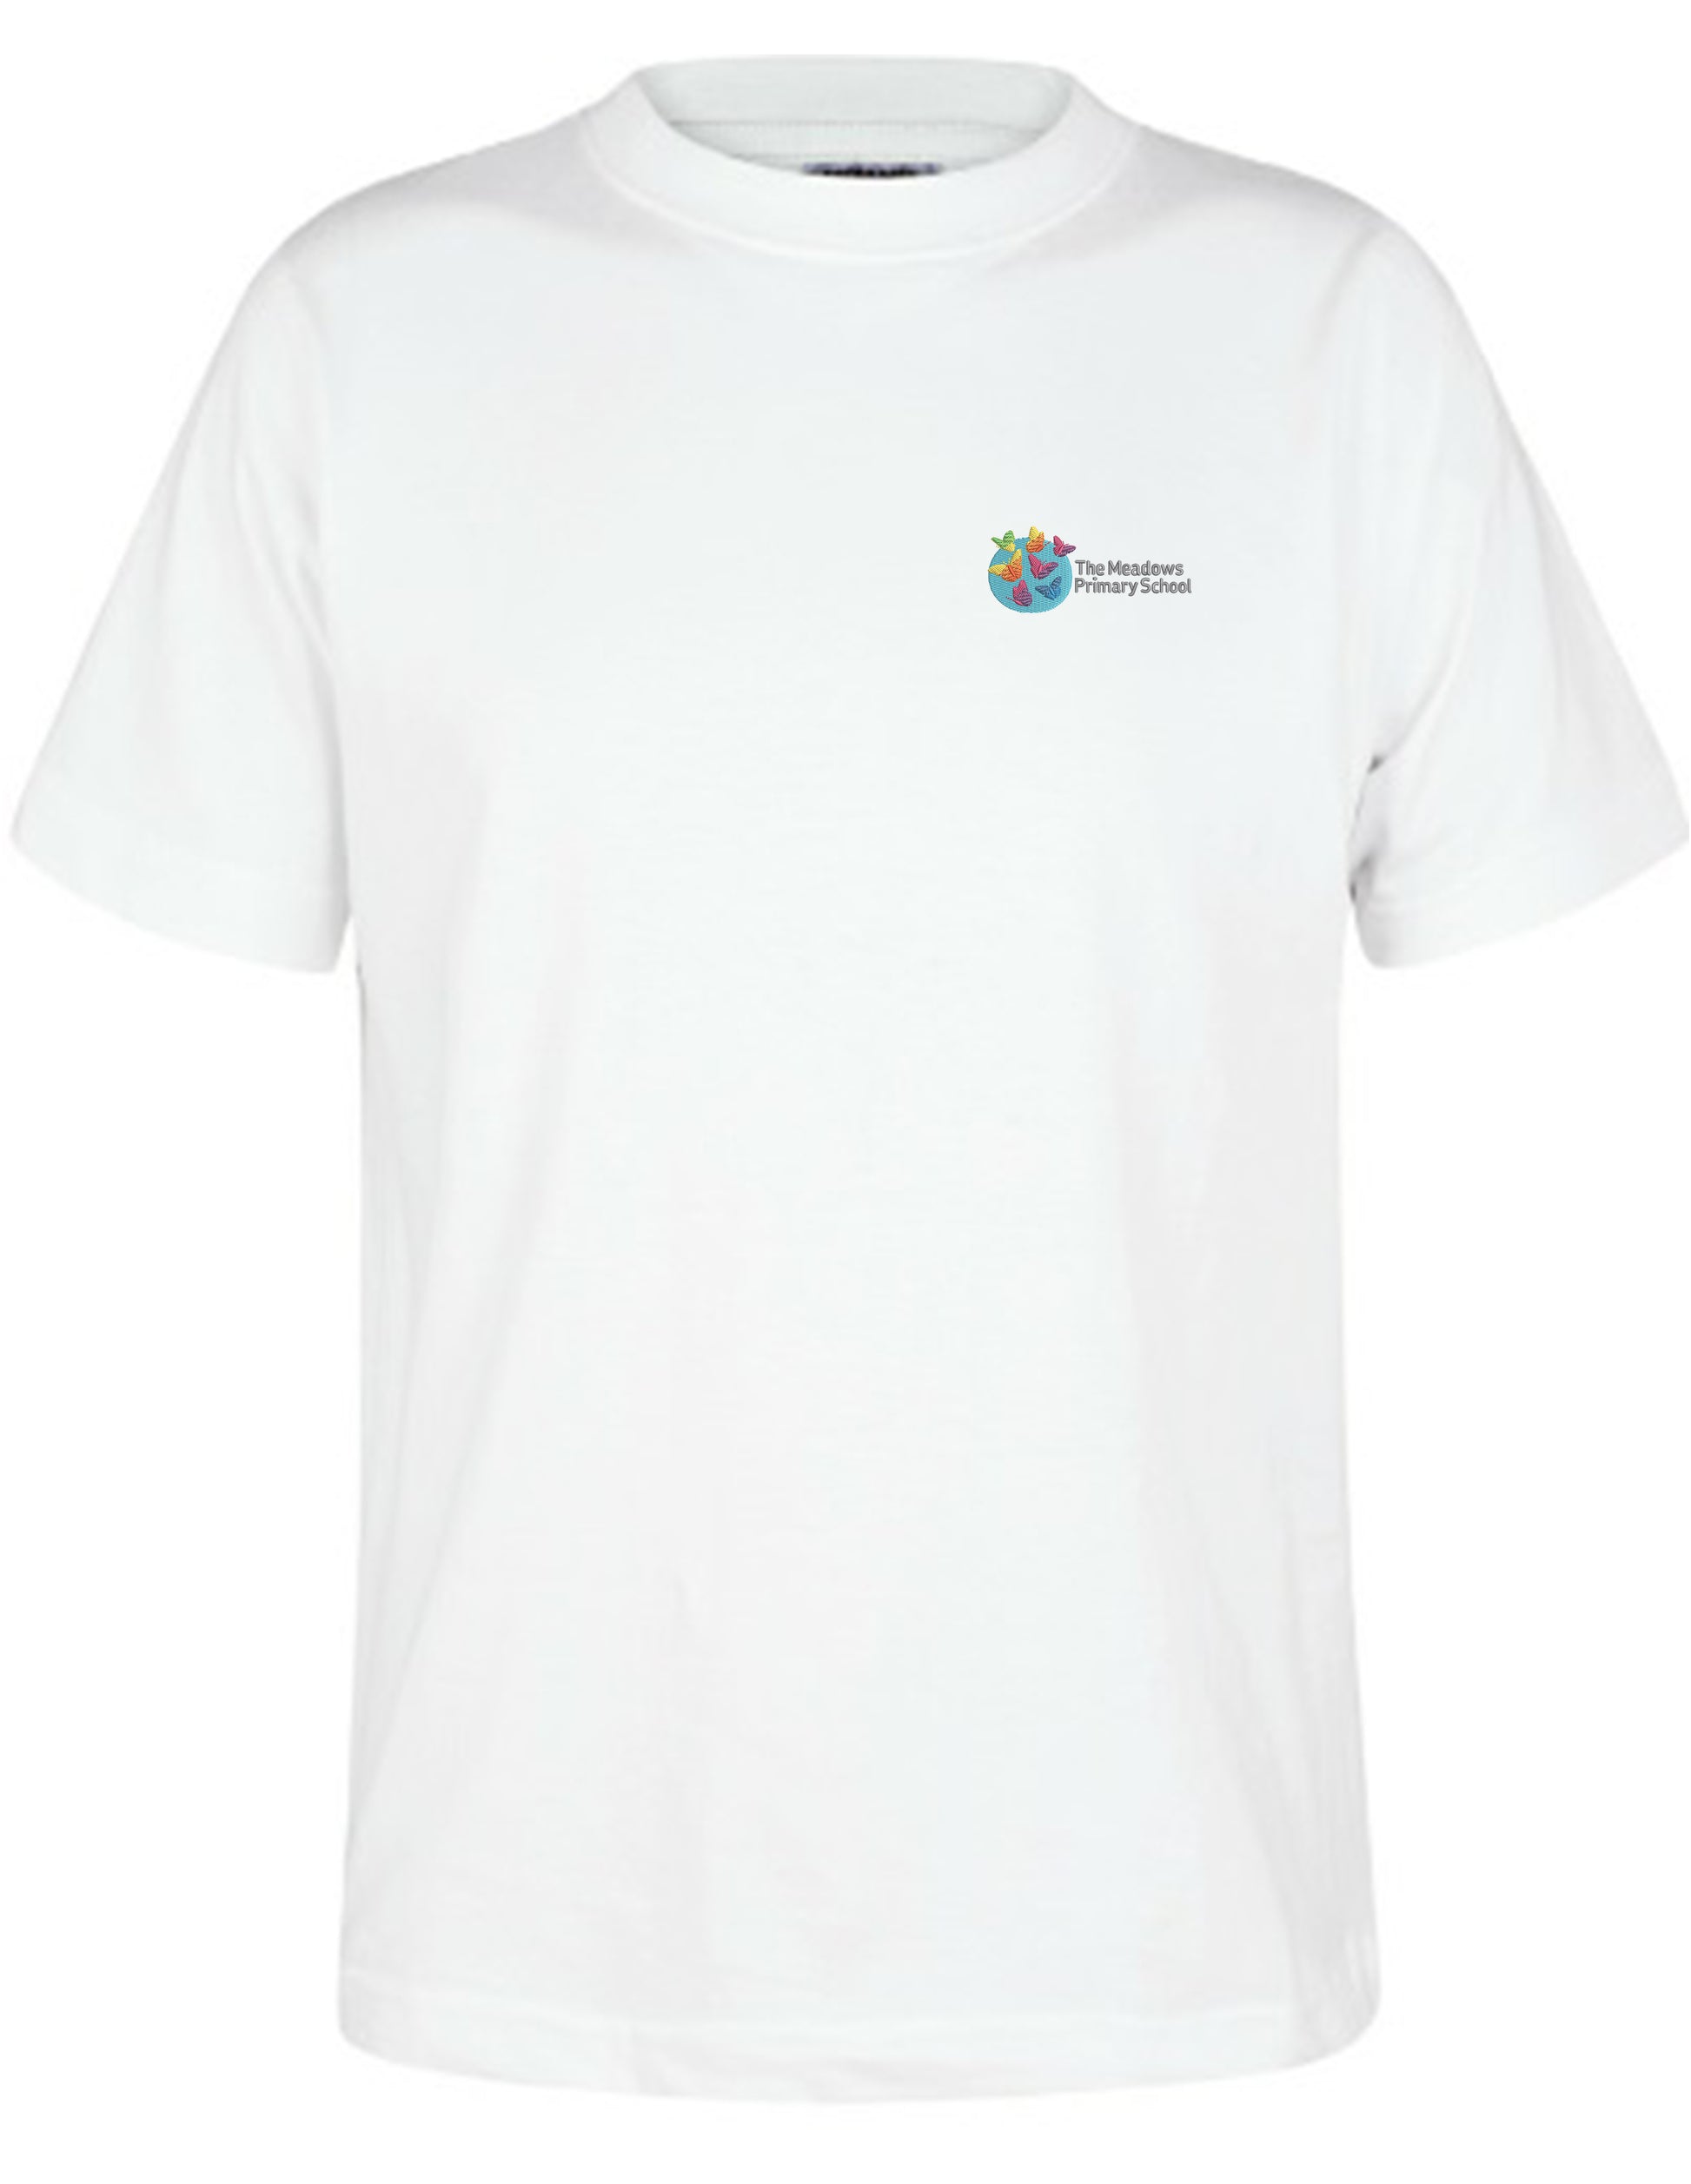 The Meadows Primary School - Unisex Cotton T-Shirt - School Uniform Shop